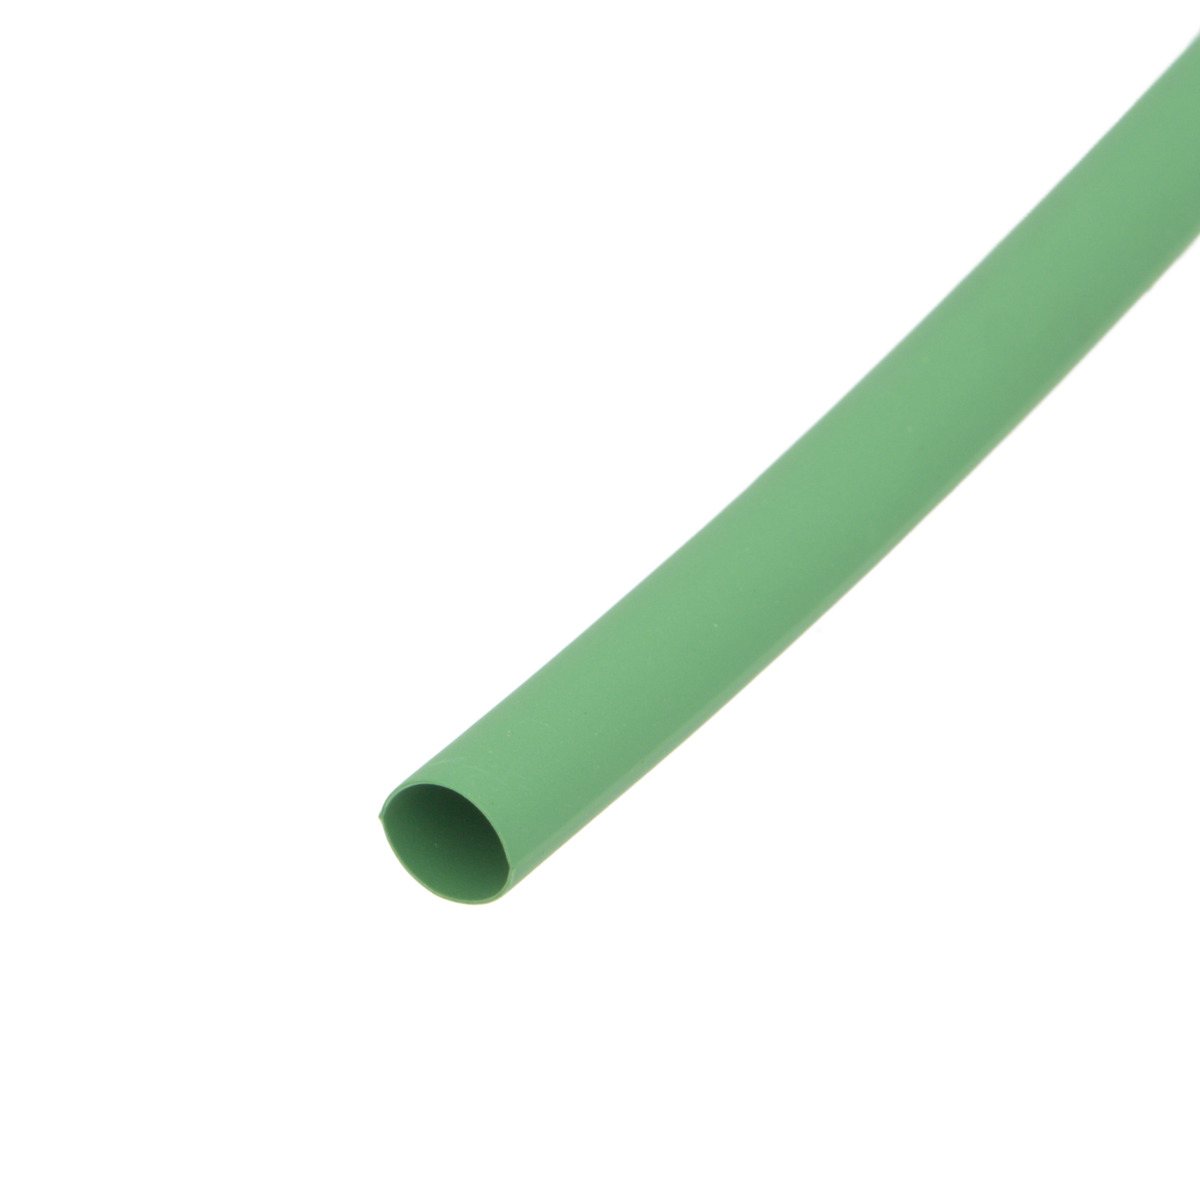 Pack de corte [1.2m] de tubo termorretráctil 2:1 Ø6.4mm verde – Poliolefina libre de halógeno e ignífugo [x25]